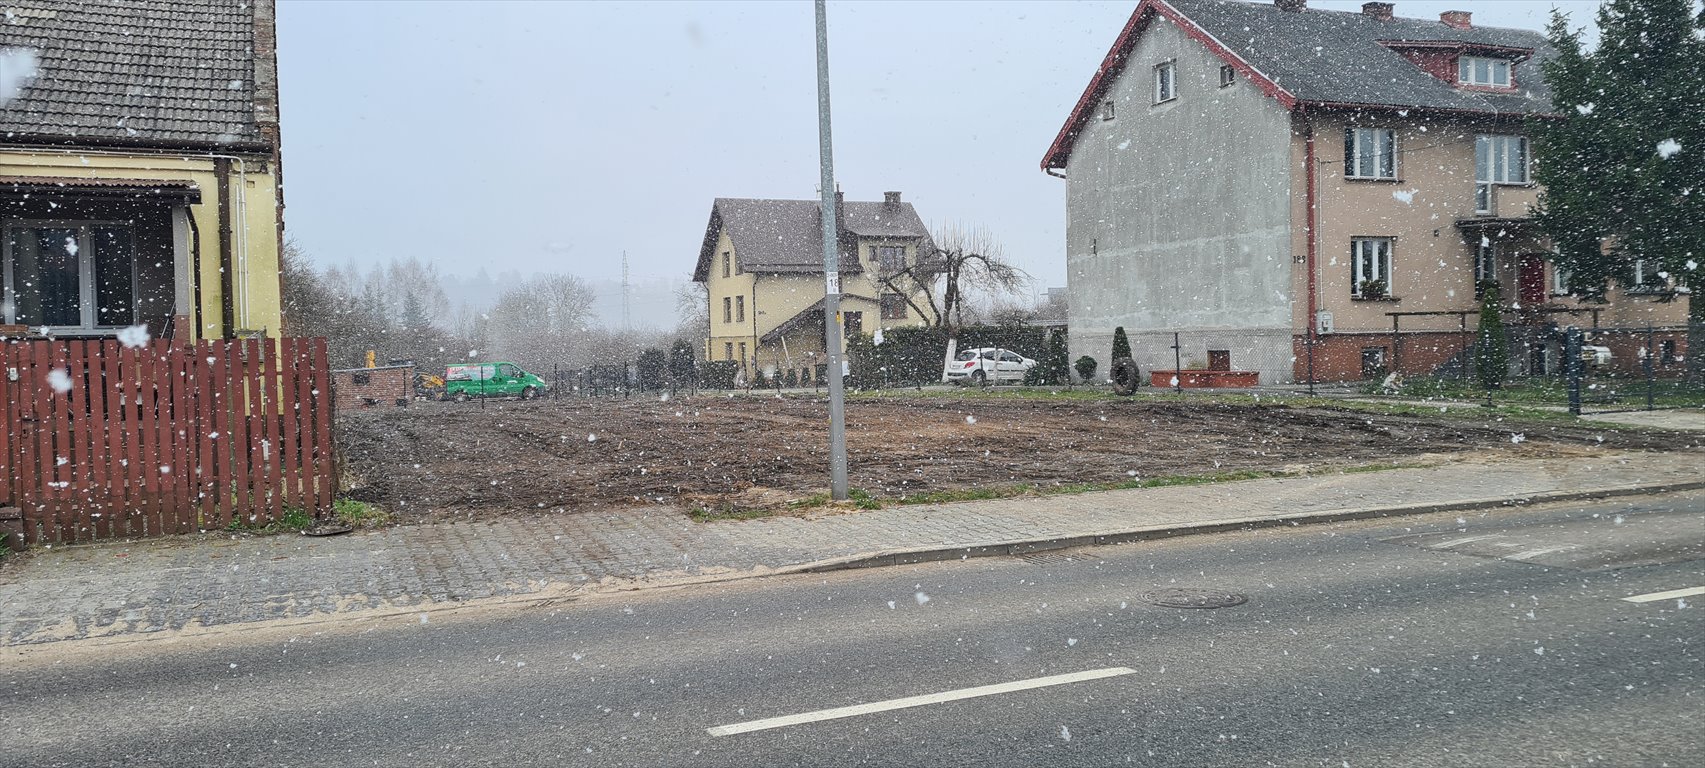 Działka budowlana na sprzedaż Kielce, Czarnów Rządowy, Piekoszowska  658m2 Foto 2